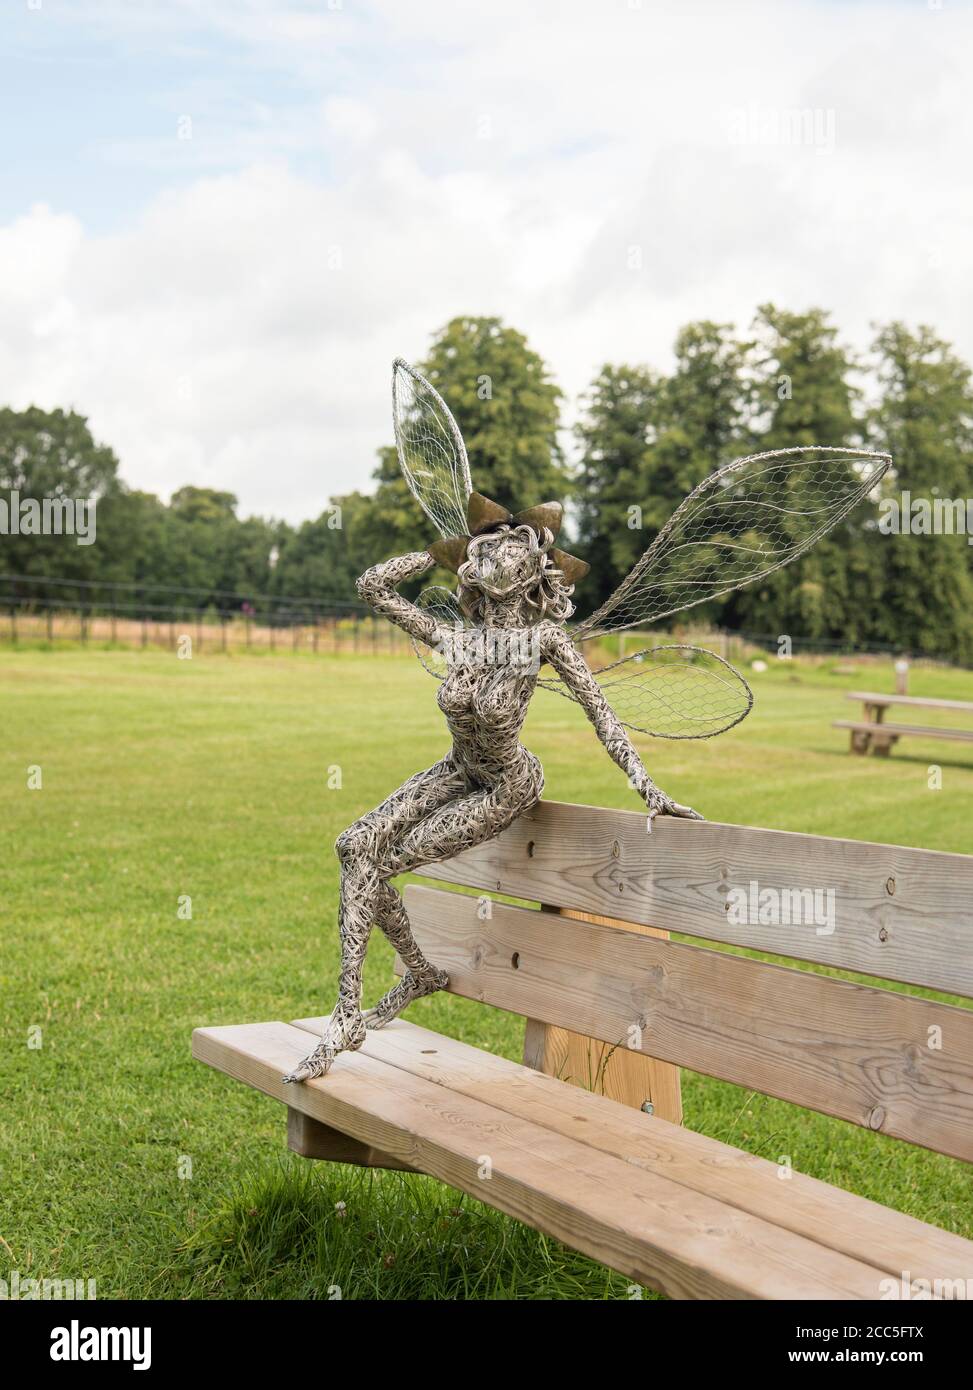 Œuvre d'art fée sculptée en fil métallique par Robin Wight exposée à Trentham Gardens Staffordshire England UK. Banque D'Images